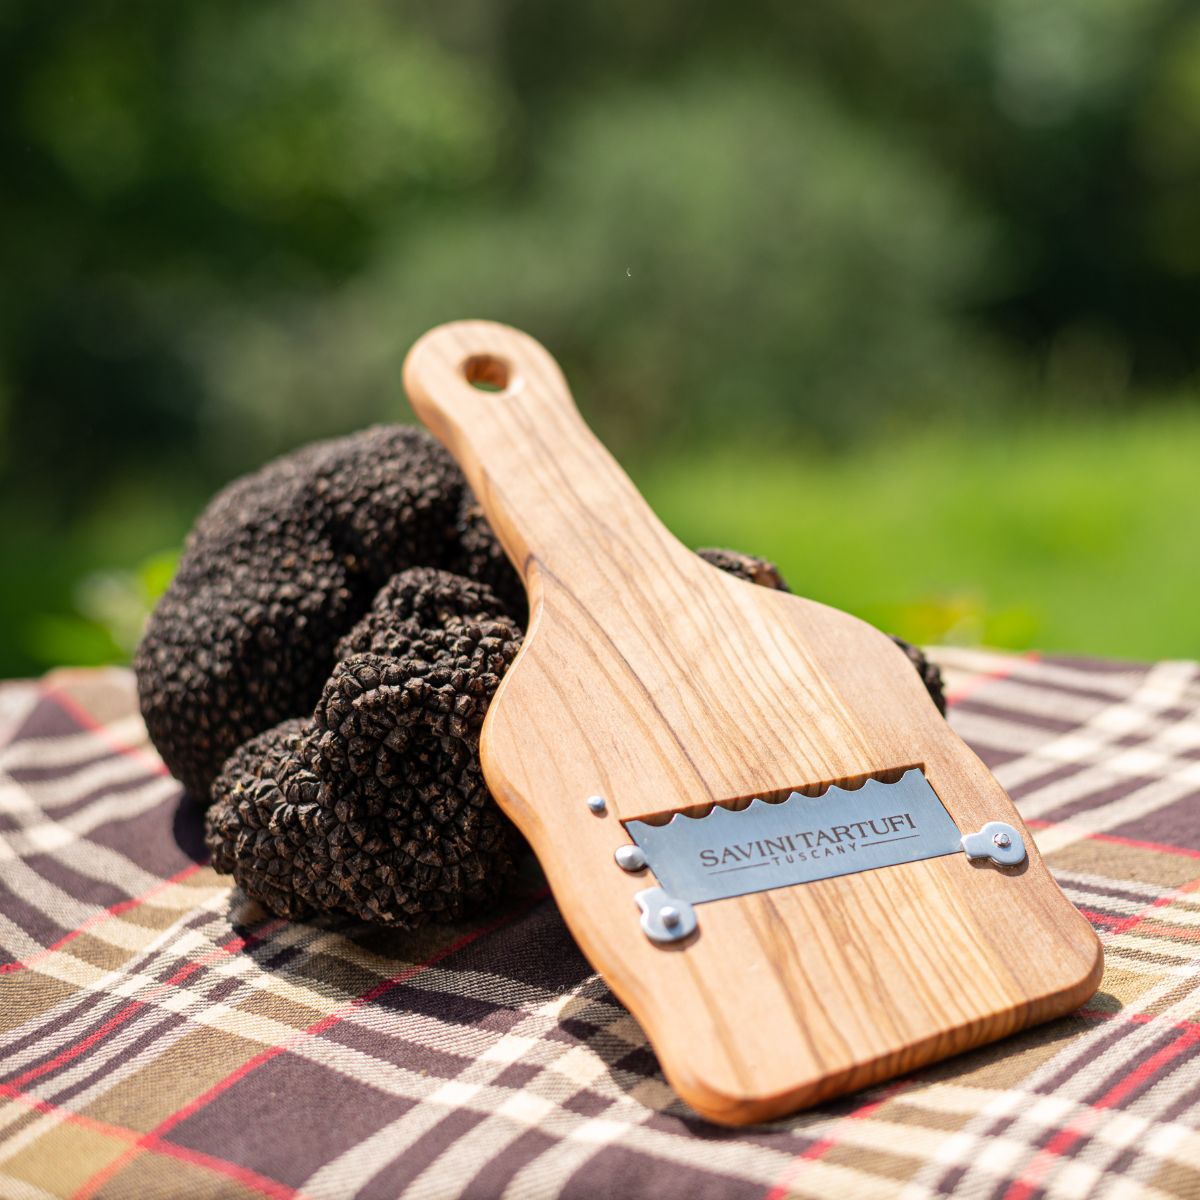 Olive wood truffle slicer